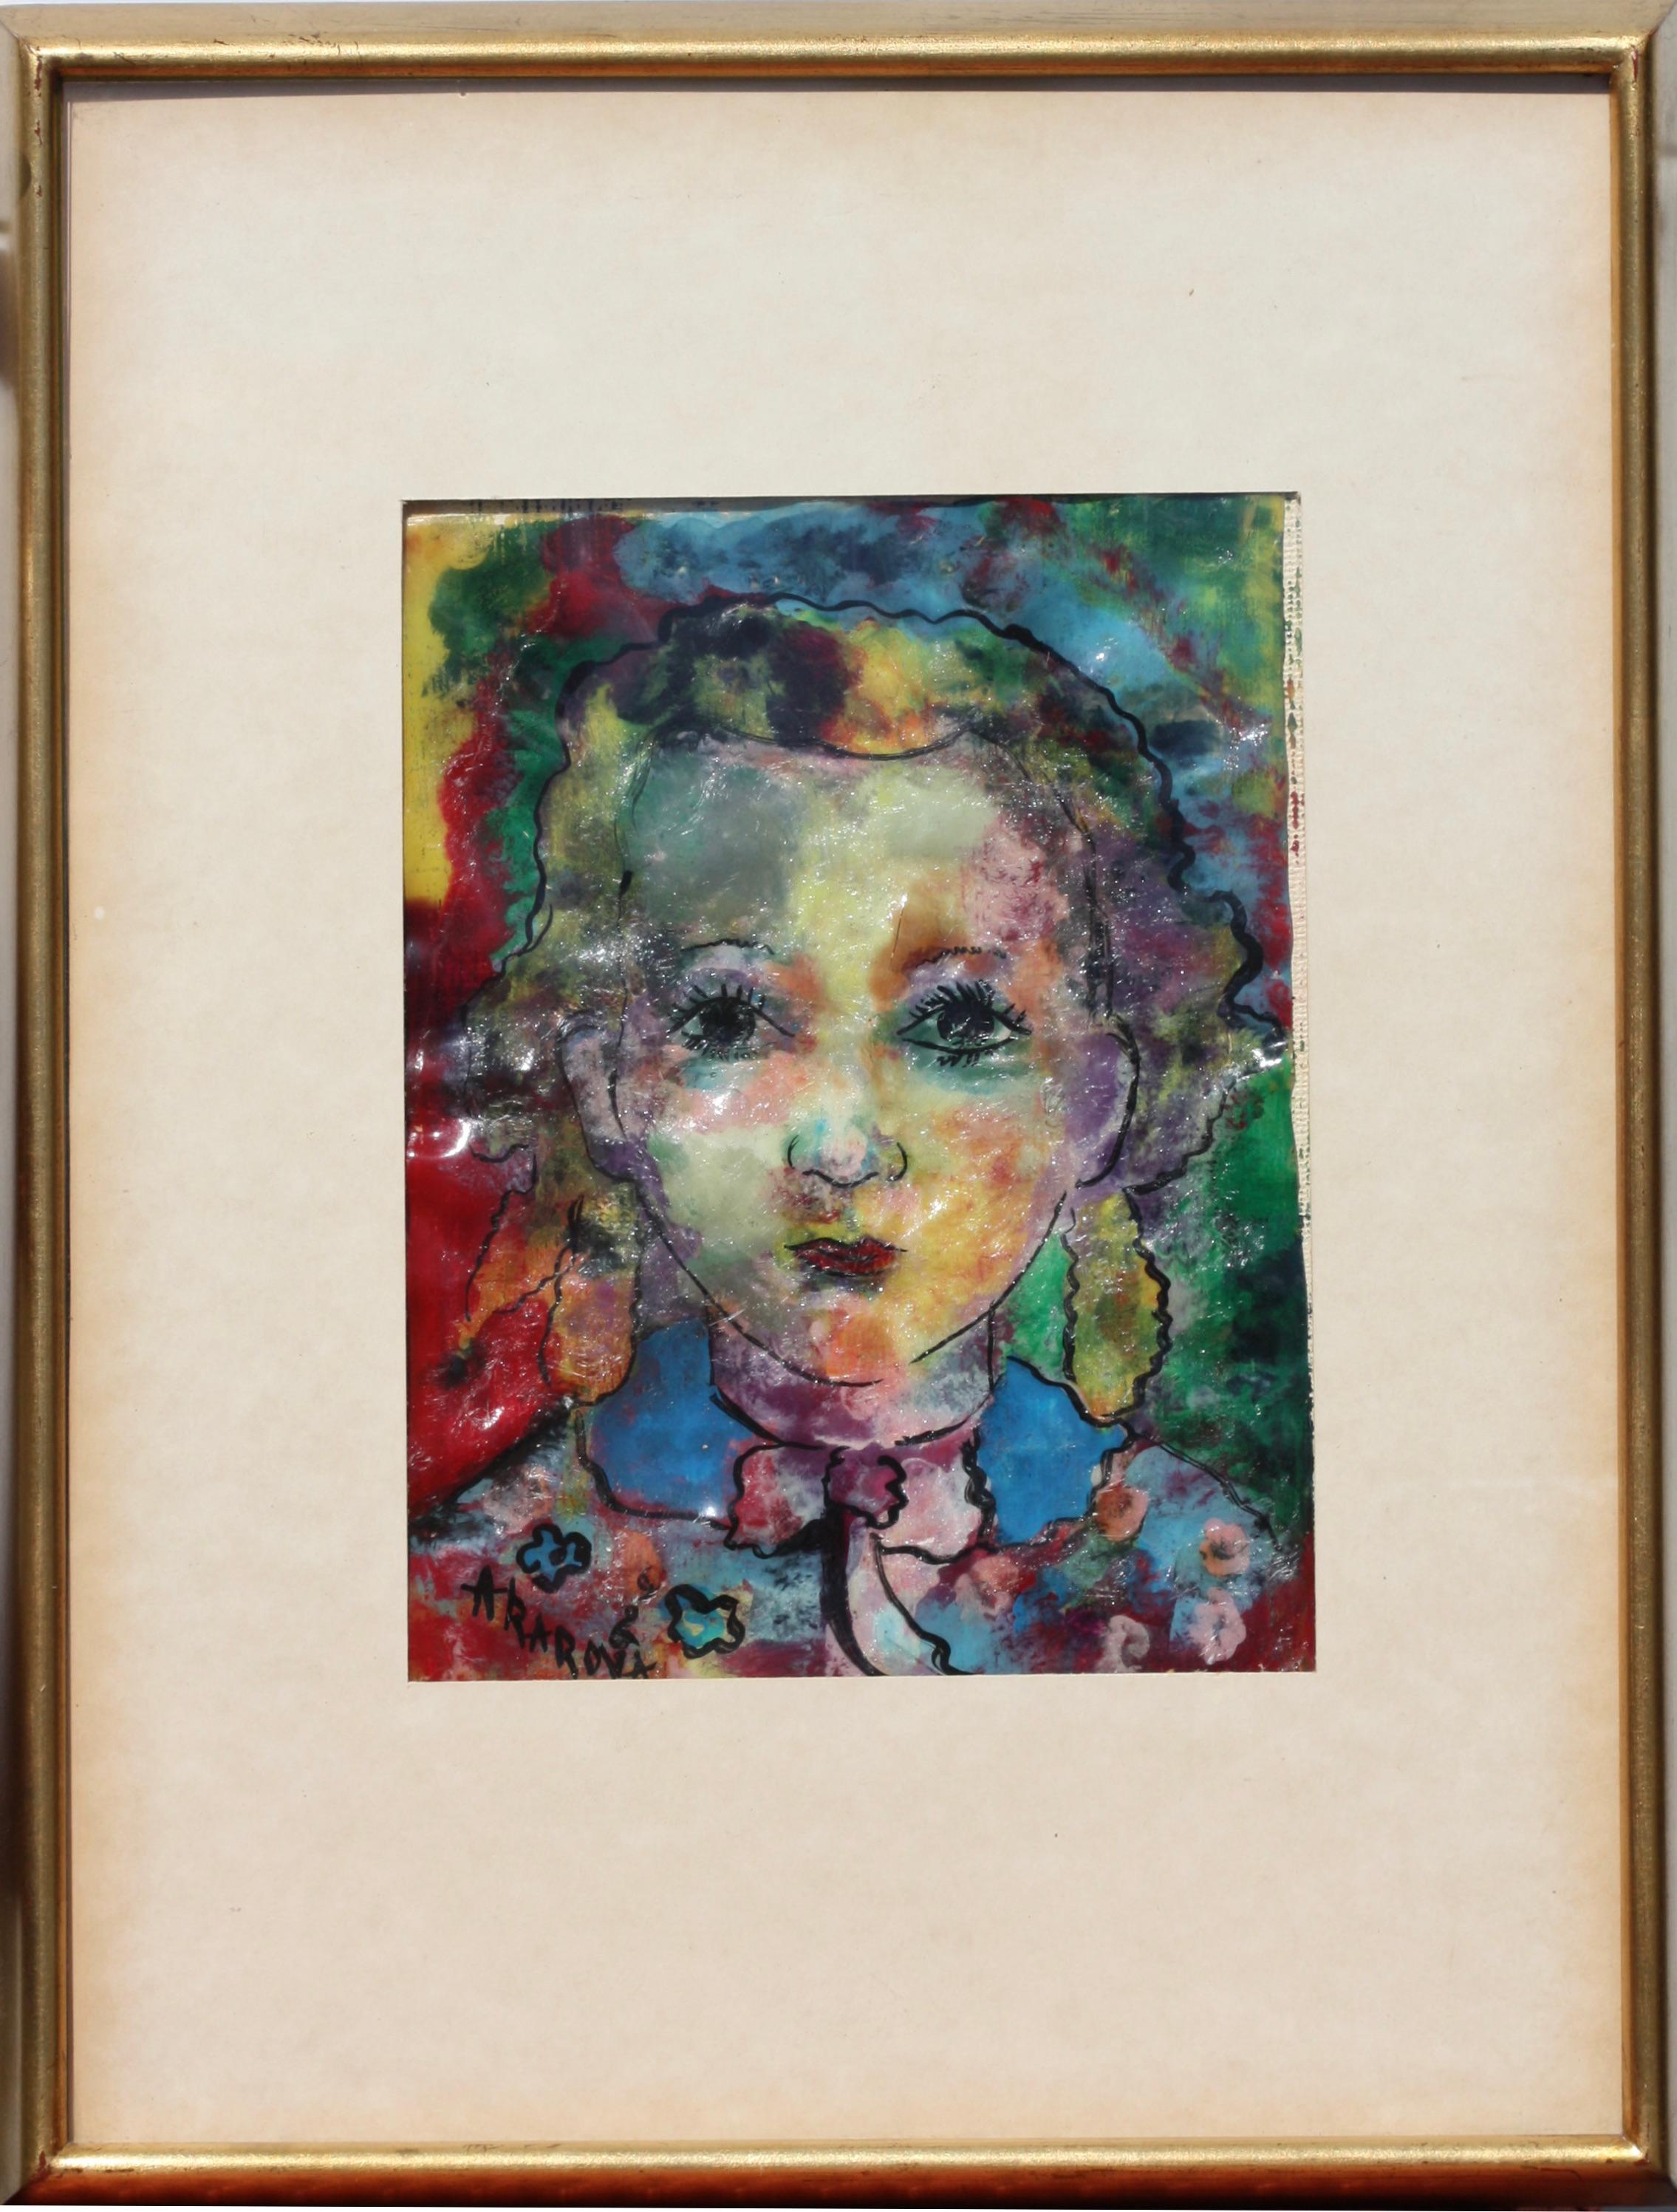 Marguerite Acarin AKAROVA (1904-1999)
aquarell auf Papier
signiert unten links
AKAROVA
Visiergröße:
6.7 in. (17 cm.) x 8.85 in. (22,5 cm.)
Größe mit Rahmen
15.74 in. (40 cm.) x 12.2 in. (31 cm).